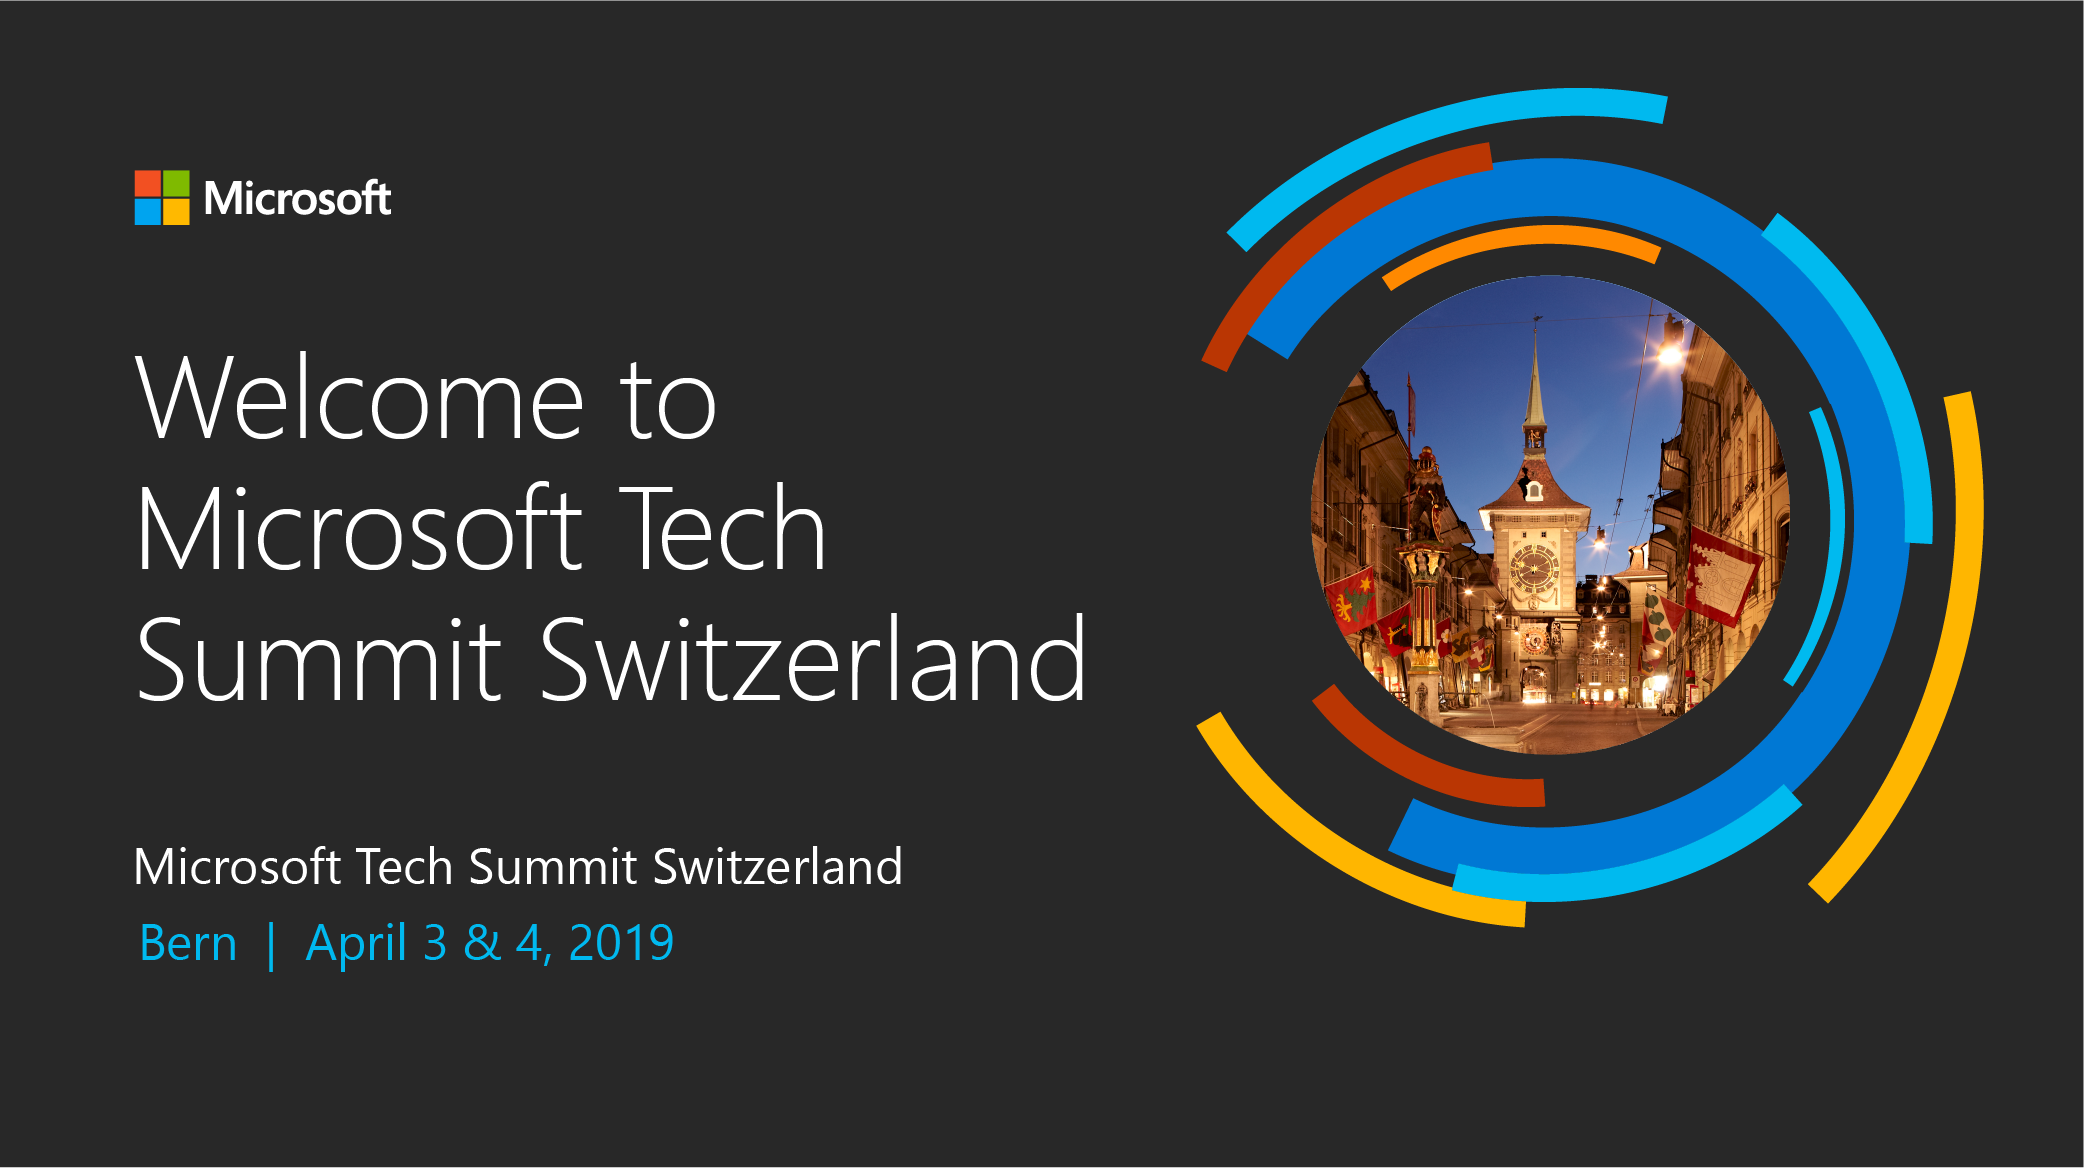 Microsoft Tech Summit Switzerland